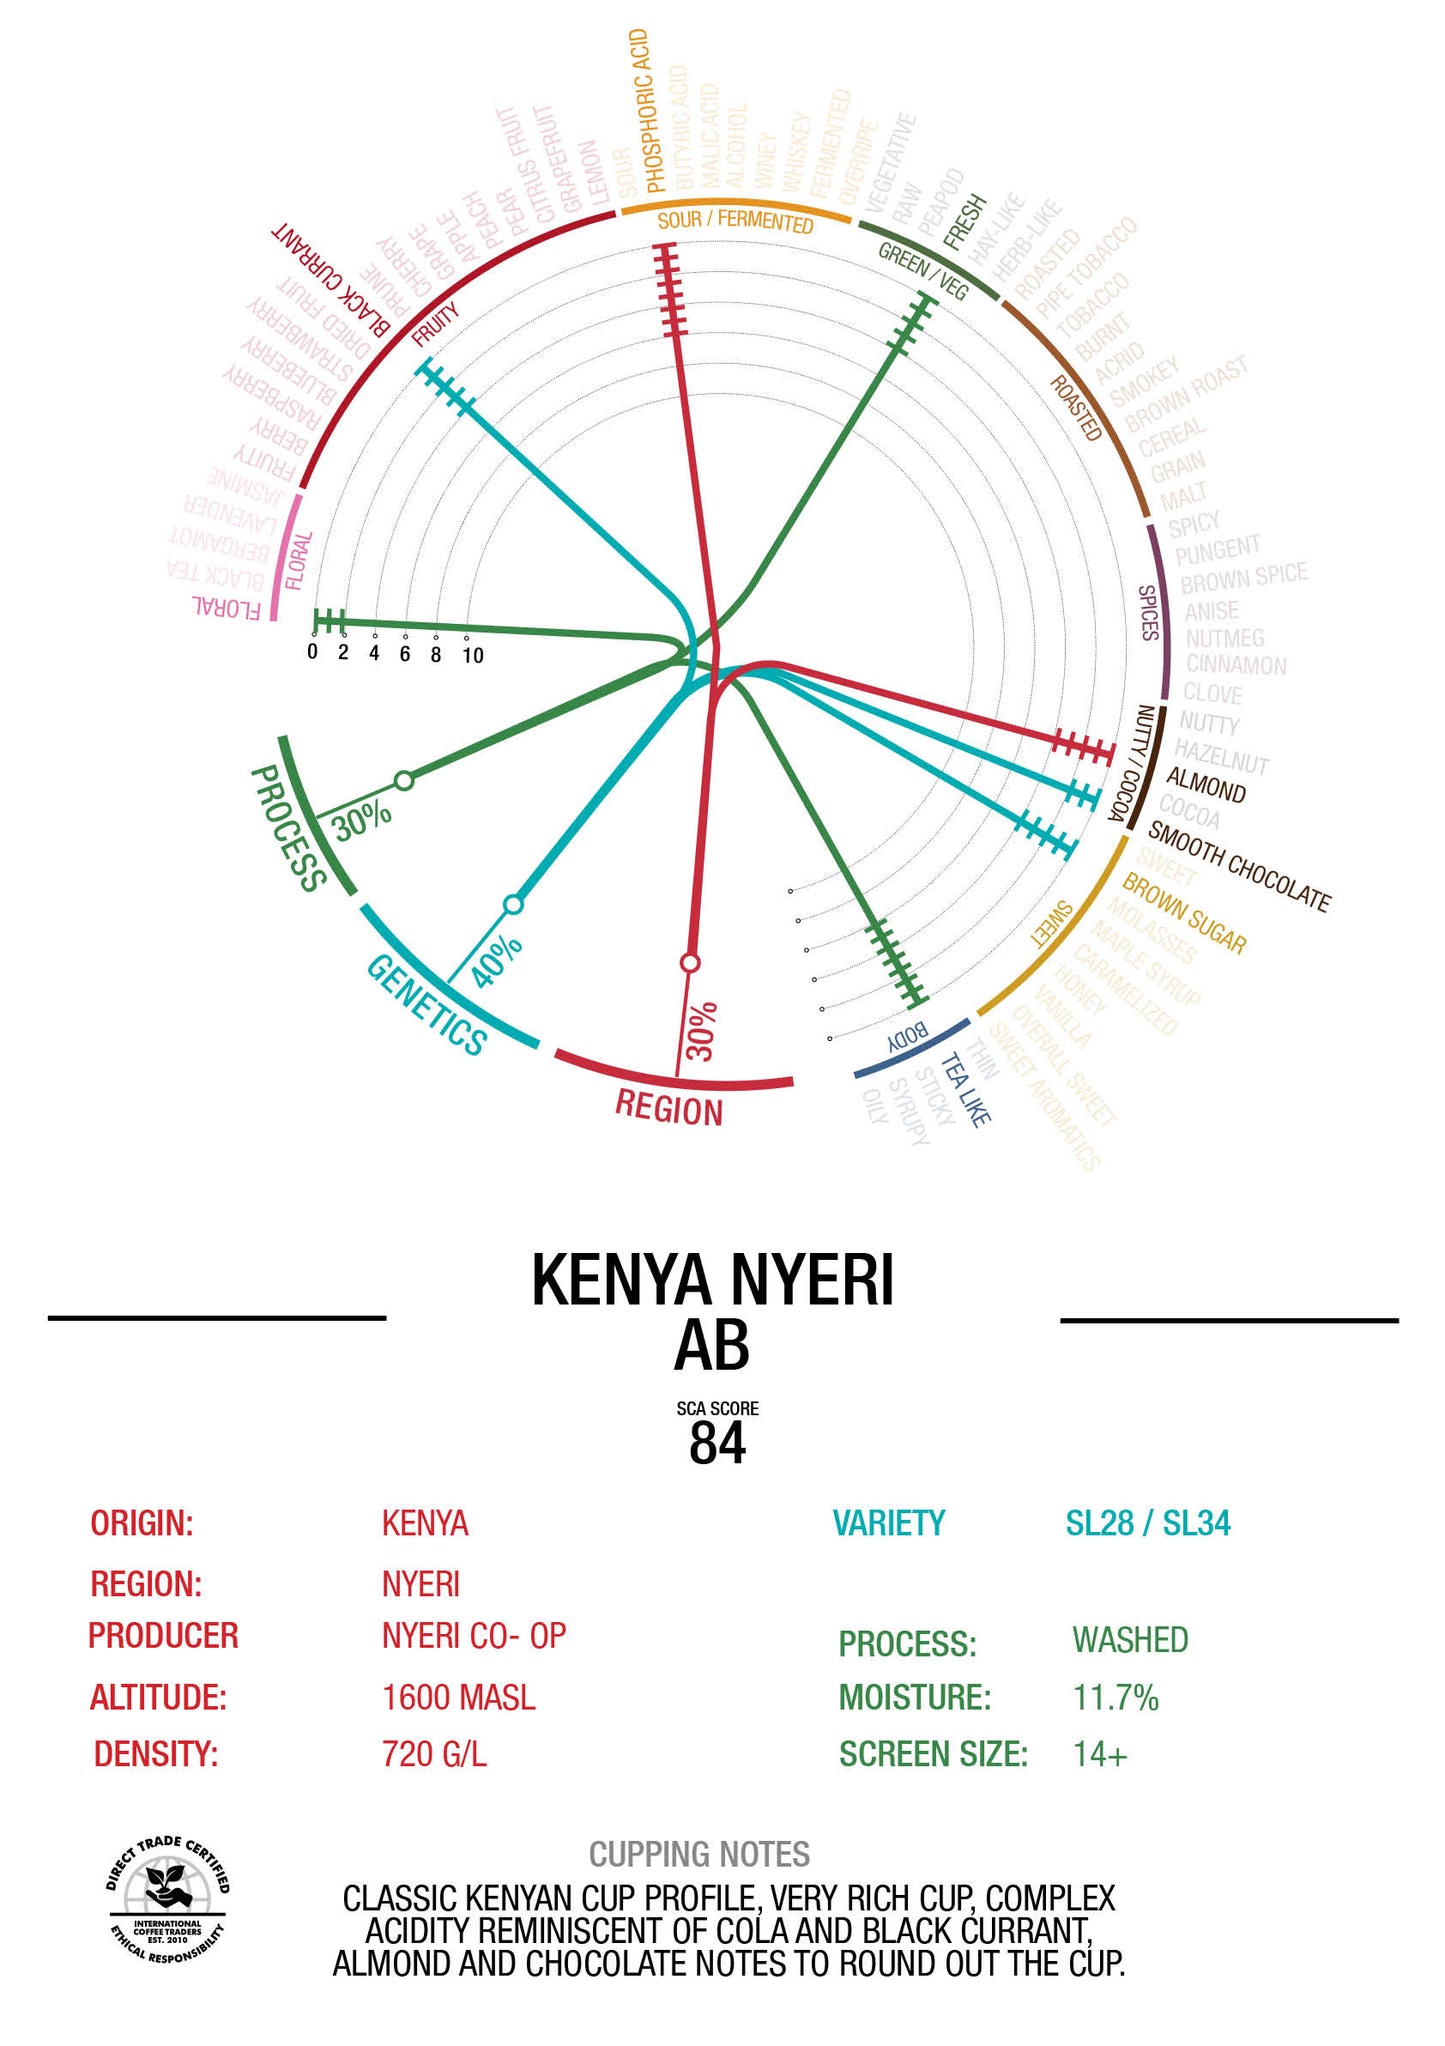 Kenya - "AB" Washed